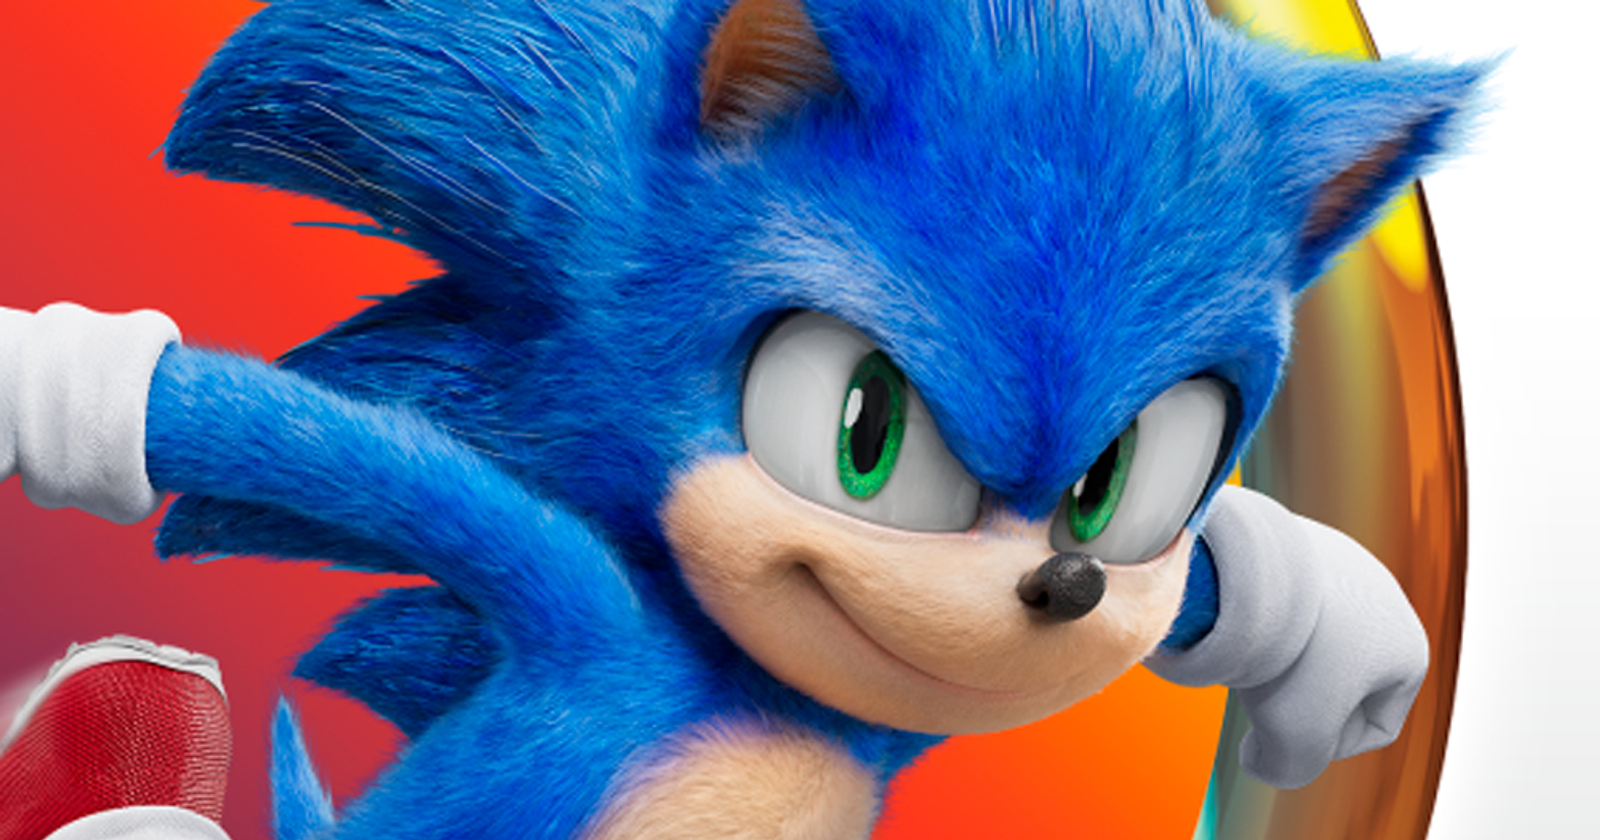 The Game Awards 2021] Sonic - O Filme 2 ganha trailer